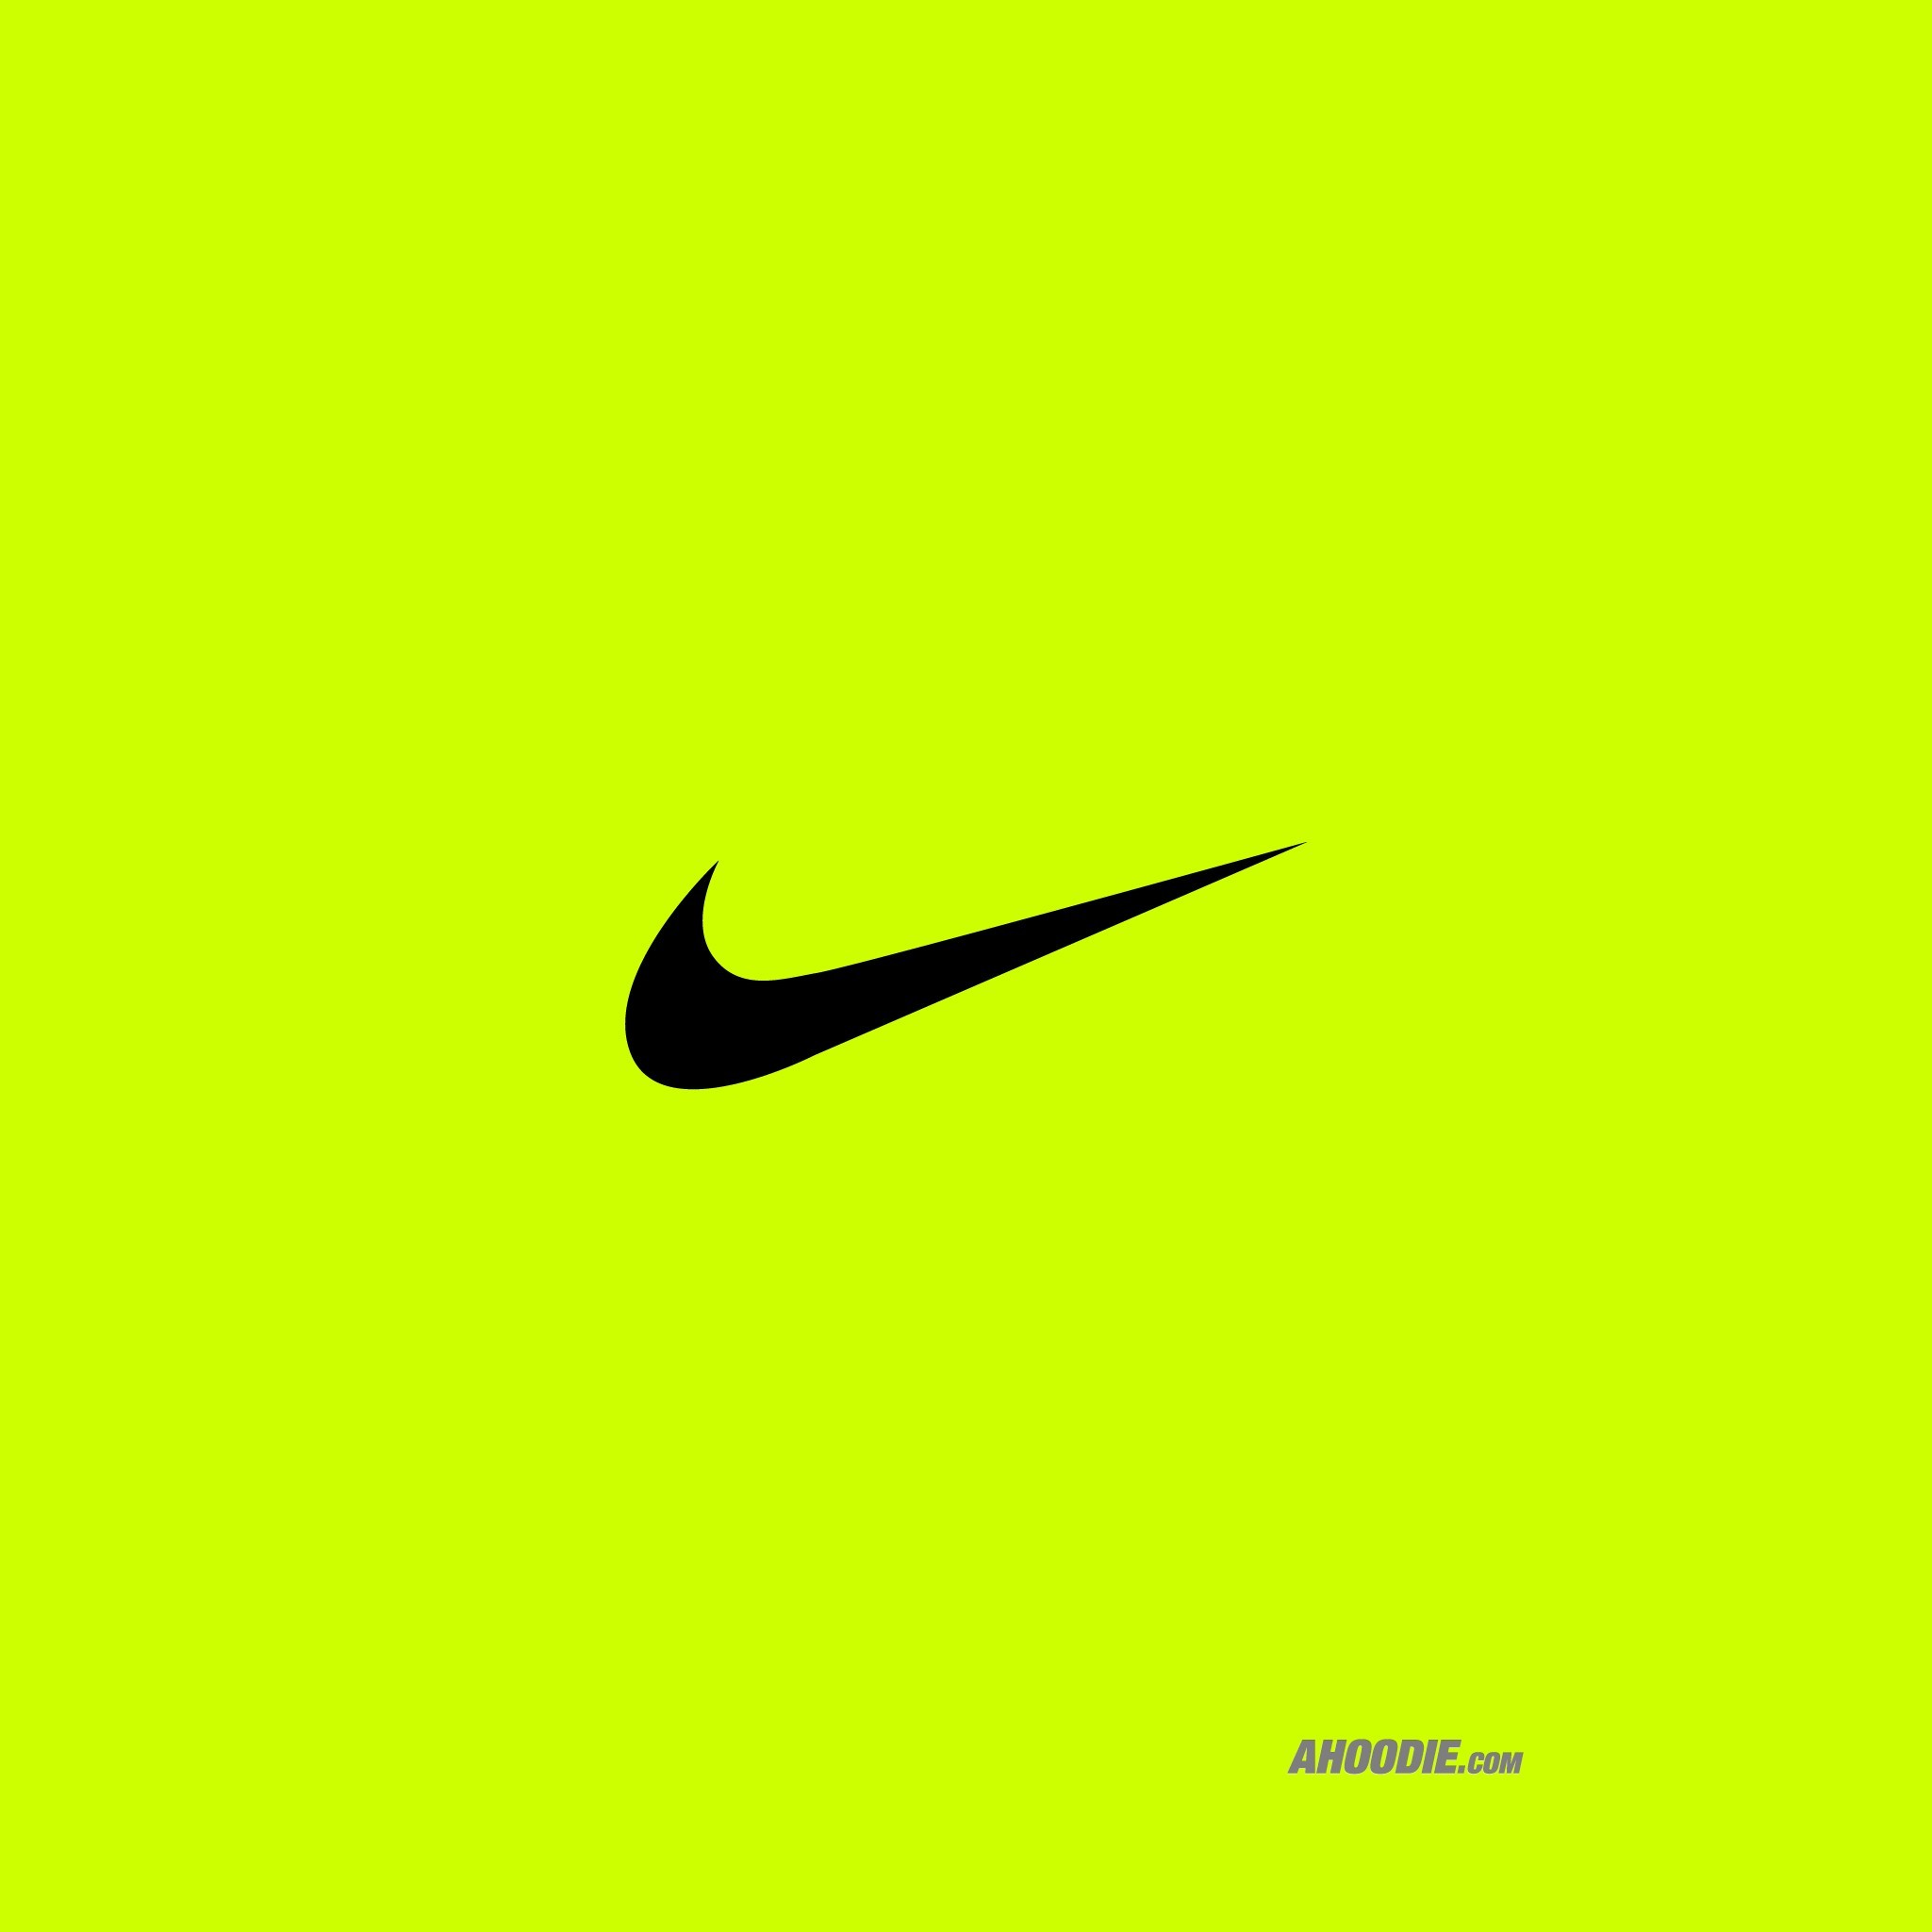 Nike Swoosh Wallpaper ·① WallpaperTag